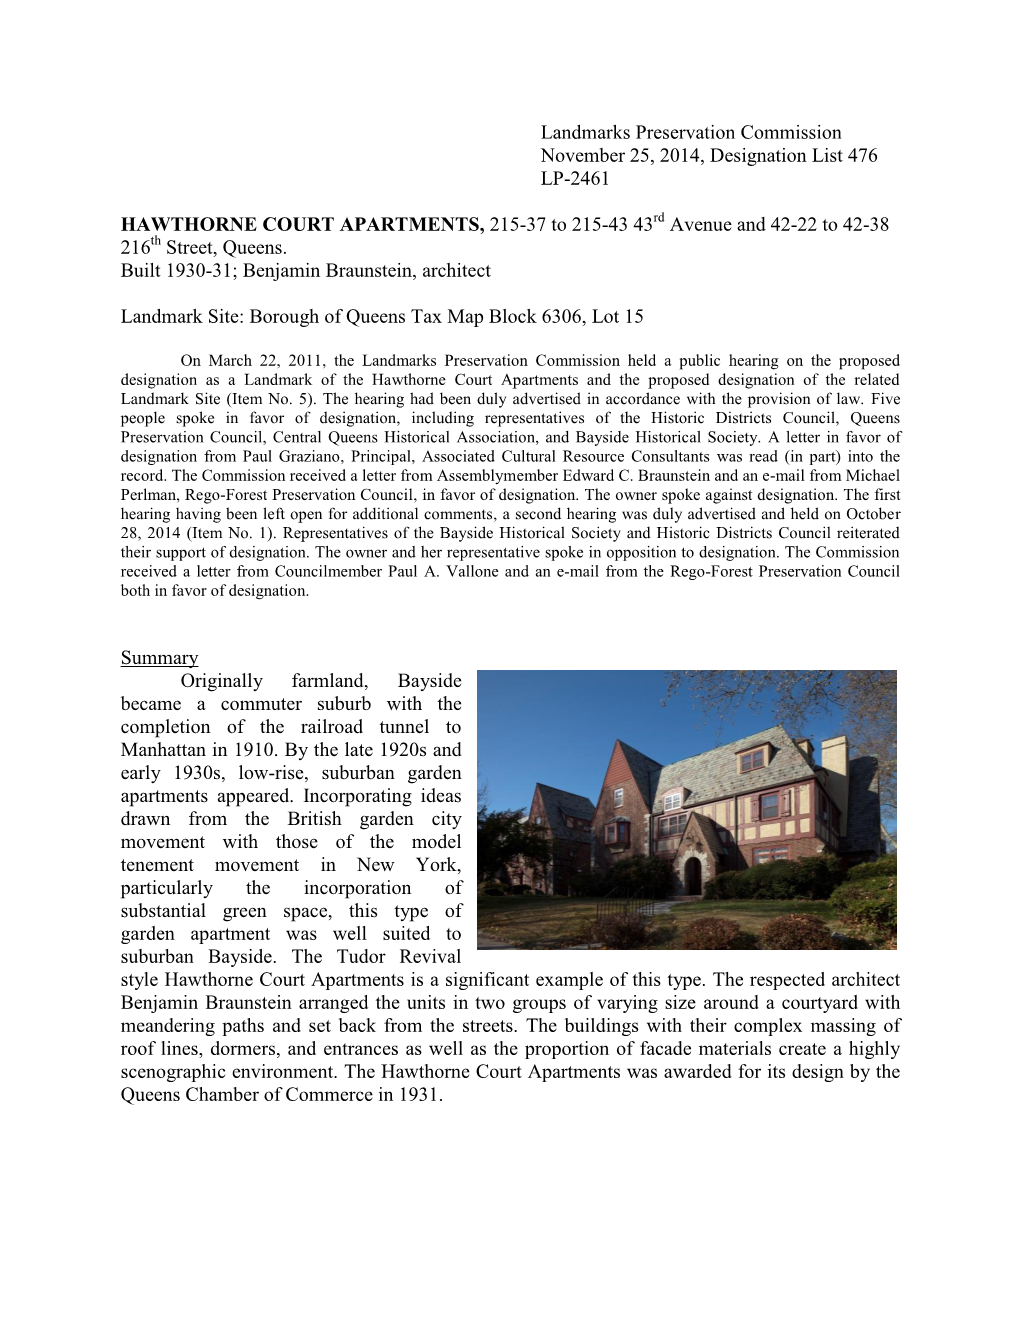 Landmarks Preservation Commission November 25, 2014, Designation List 476 LP-2461